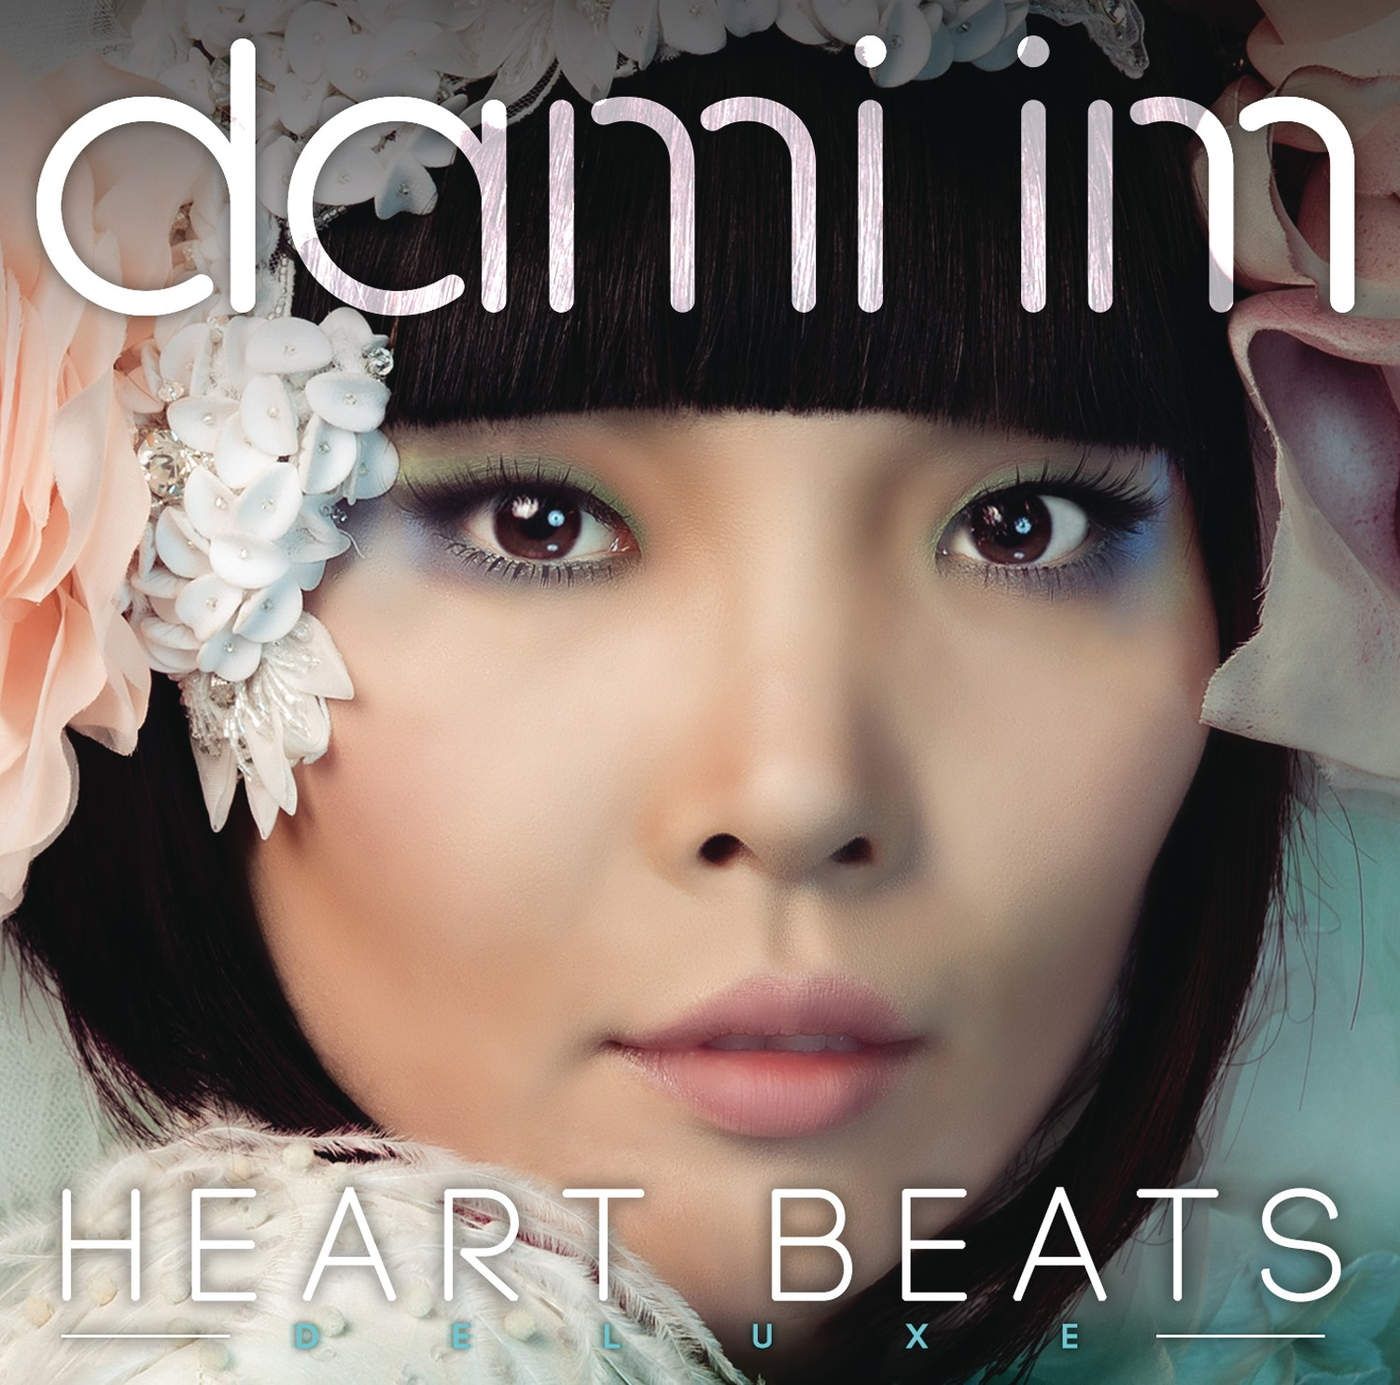 Imagem do álbum Heart Beats (Deluxe Edition) do(a) artista Dami Im